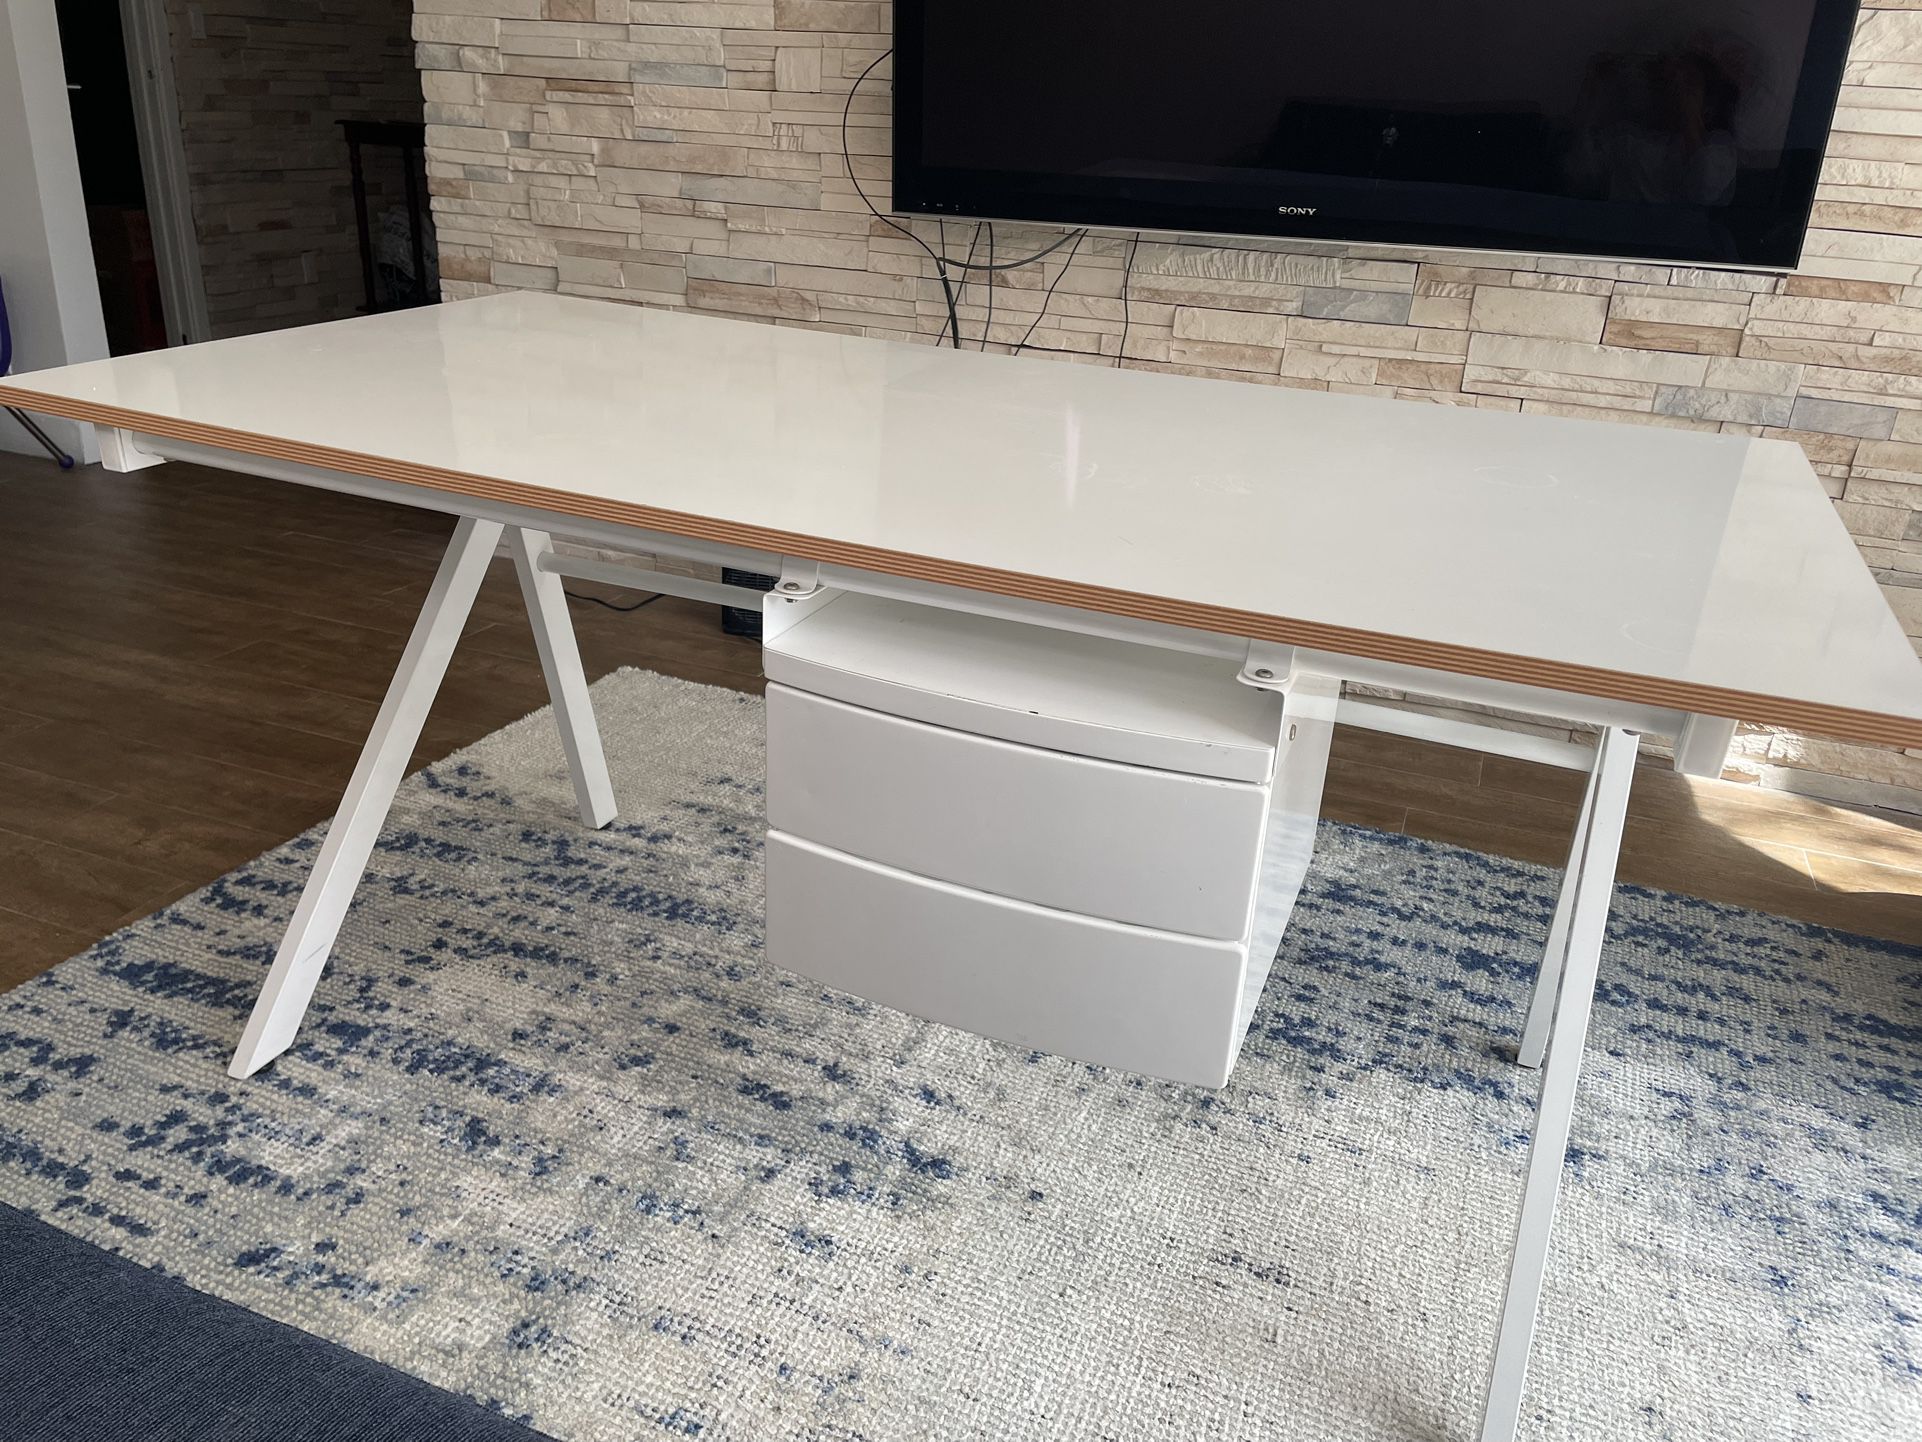 CB2 White Modern Desk